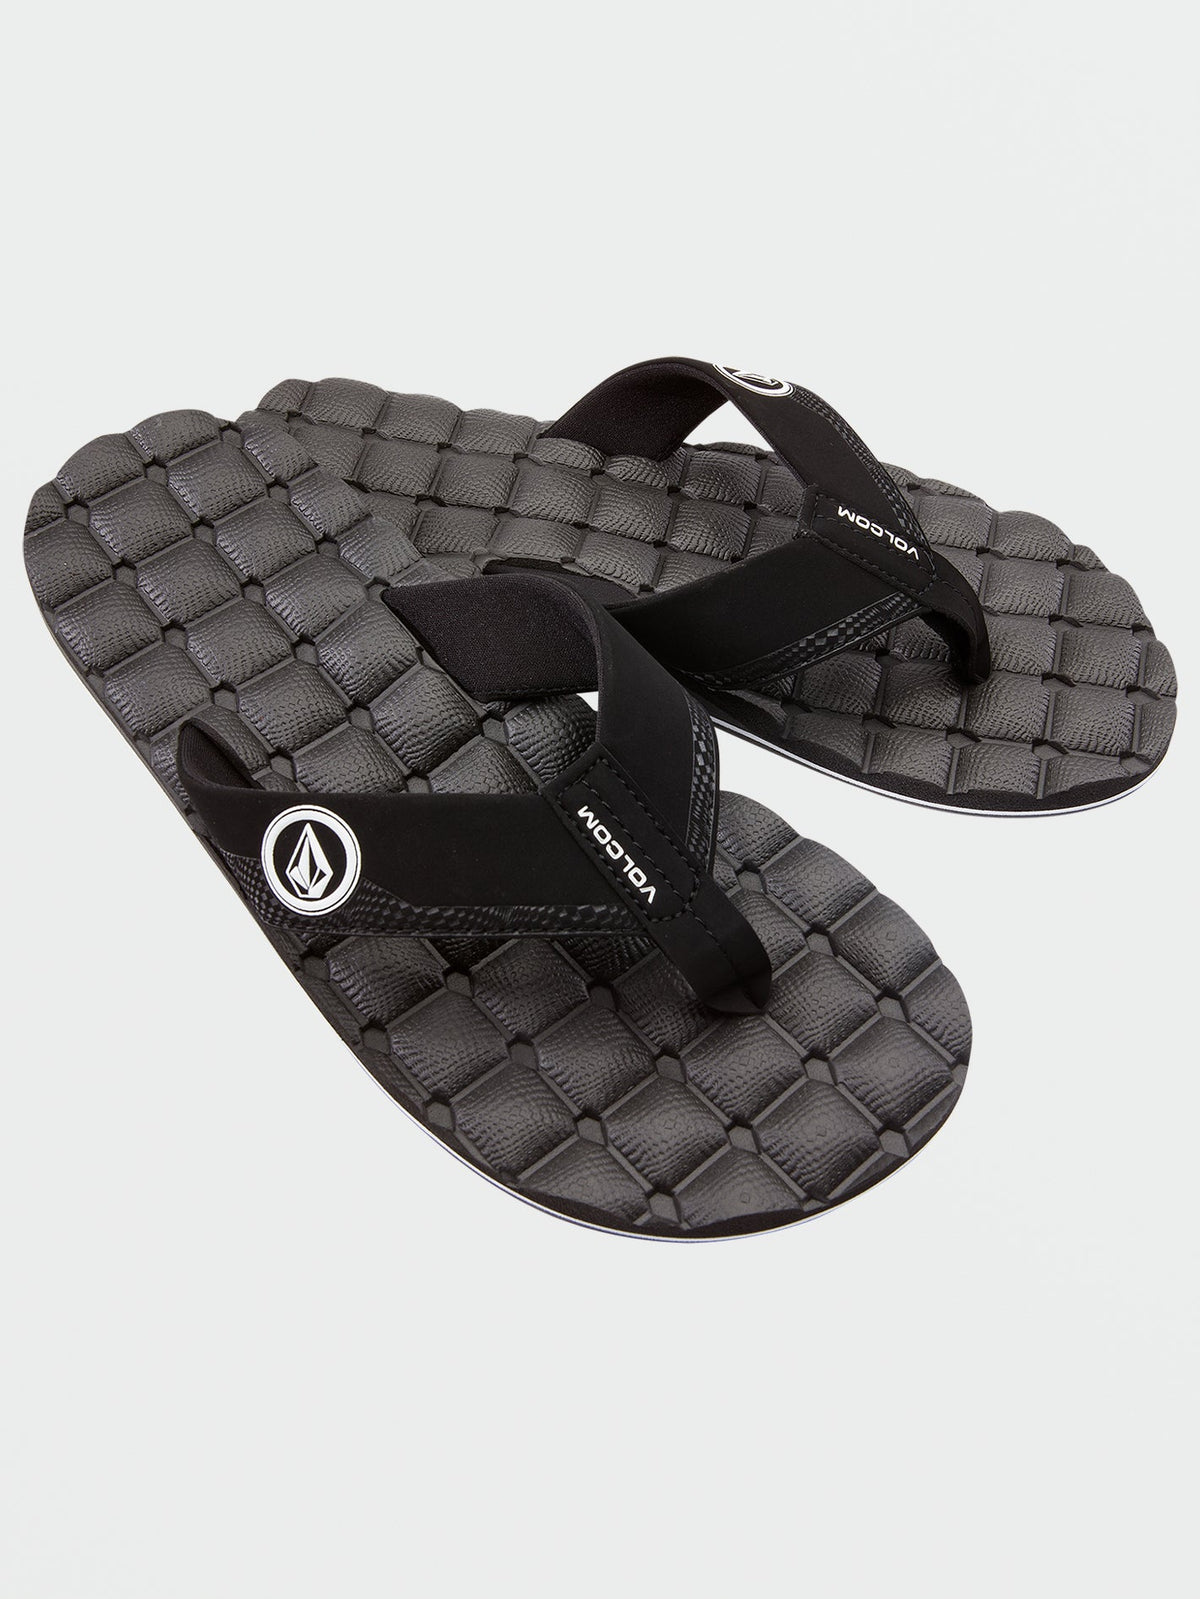 Volcom Recliner Men's Sandals Black White